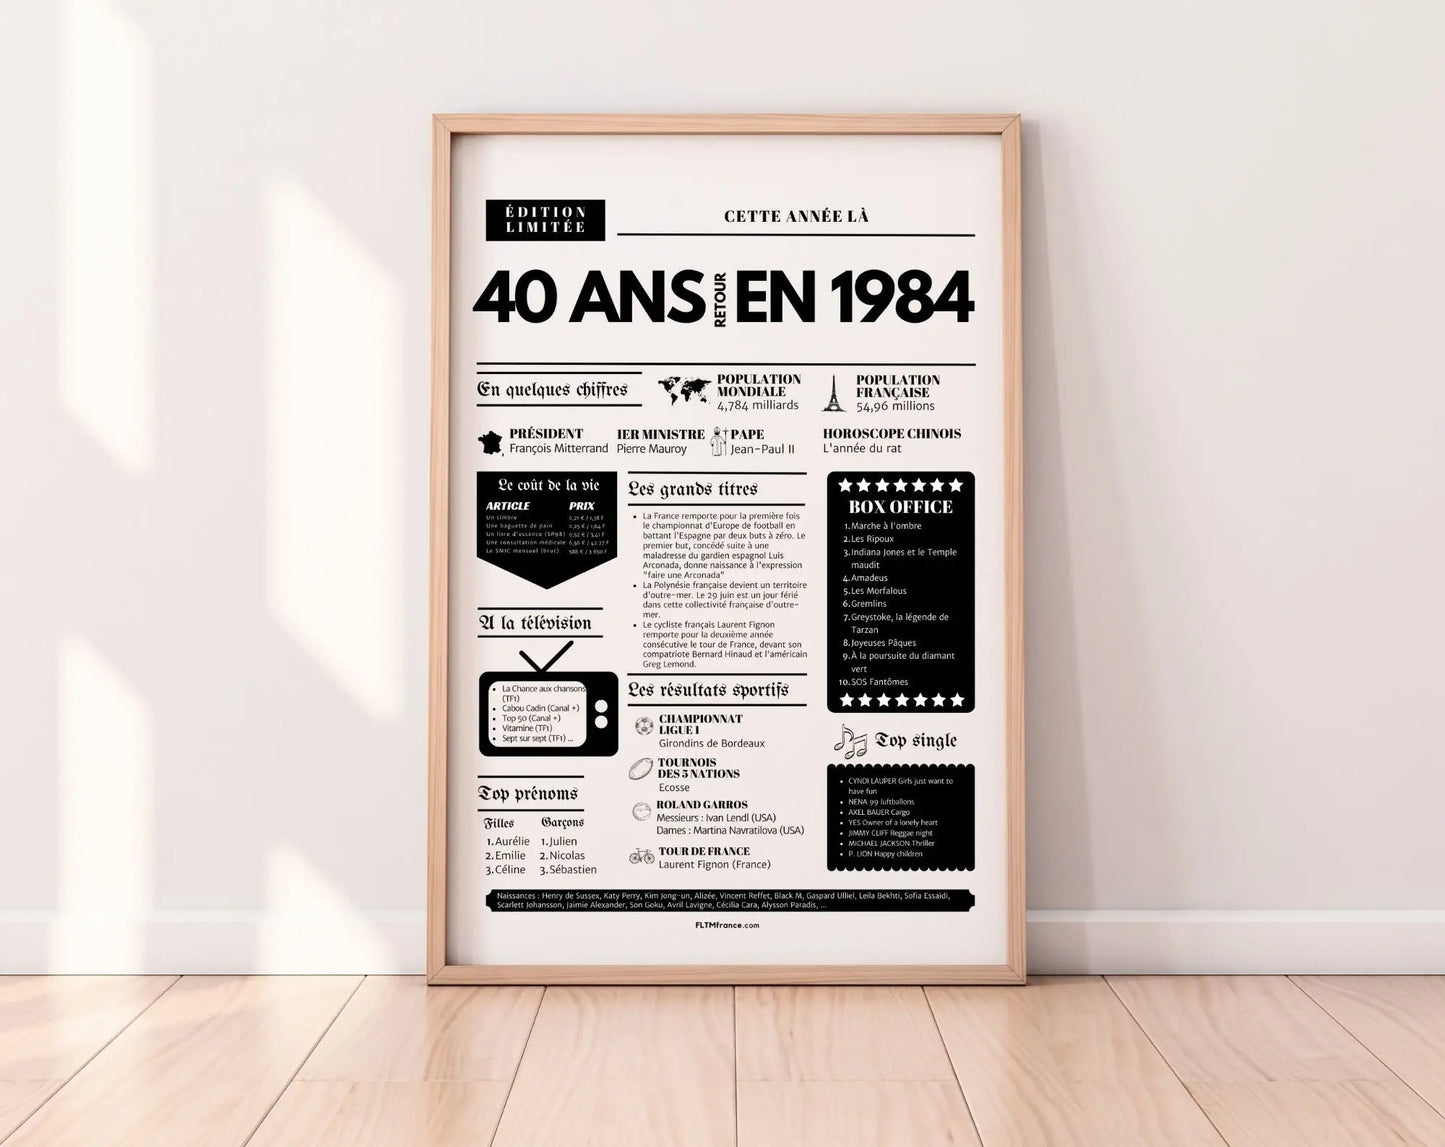 Affiche 40 ans retour en 1984 année de naissance - Carte anniversaire 40 ans FLTMfrance